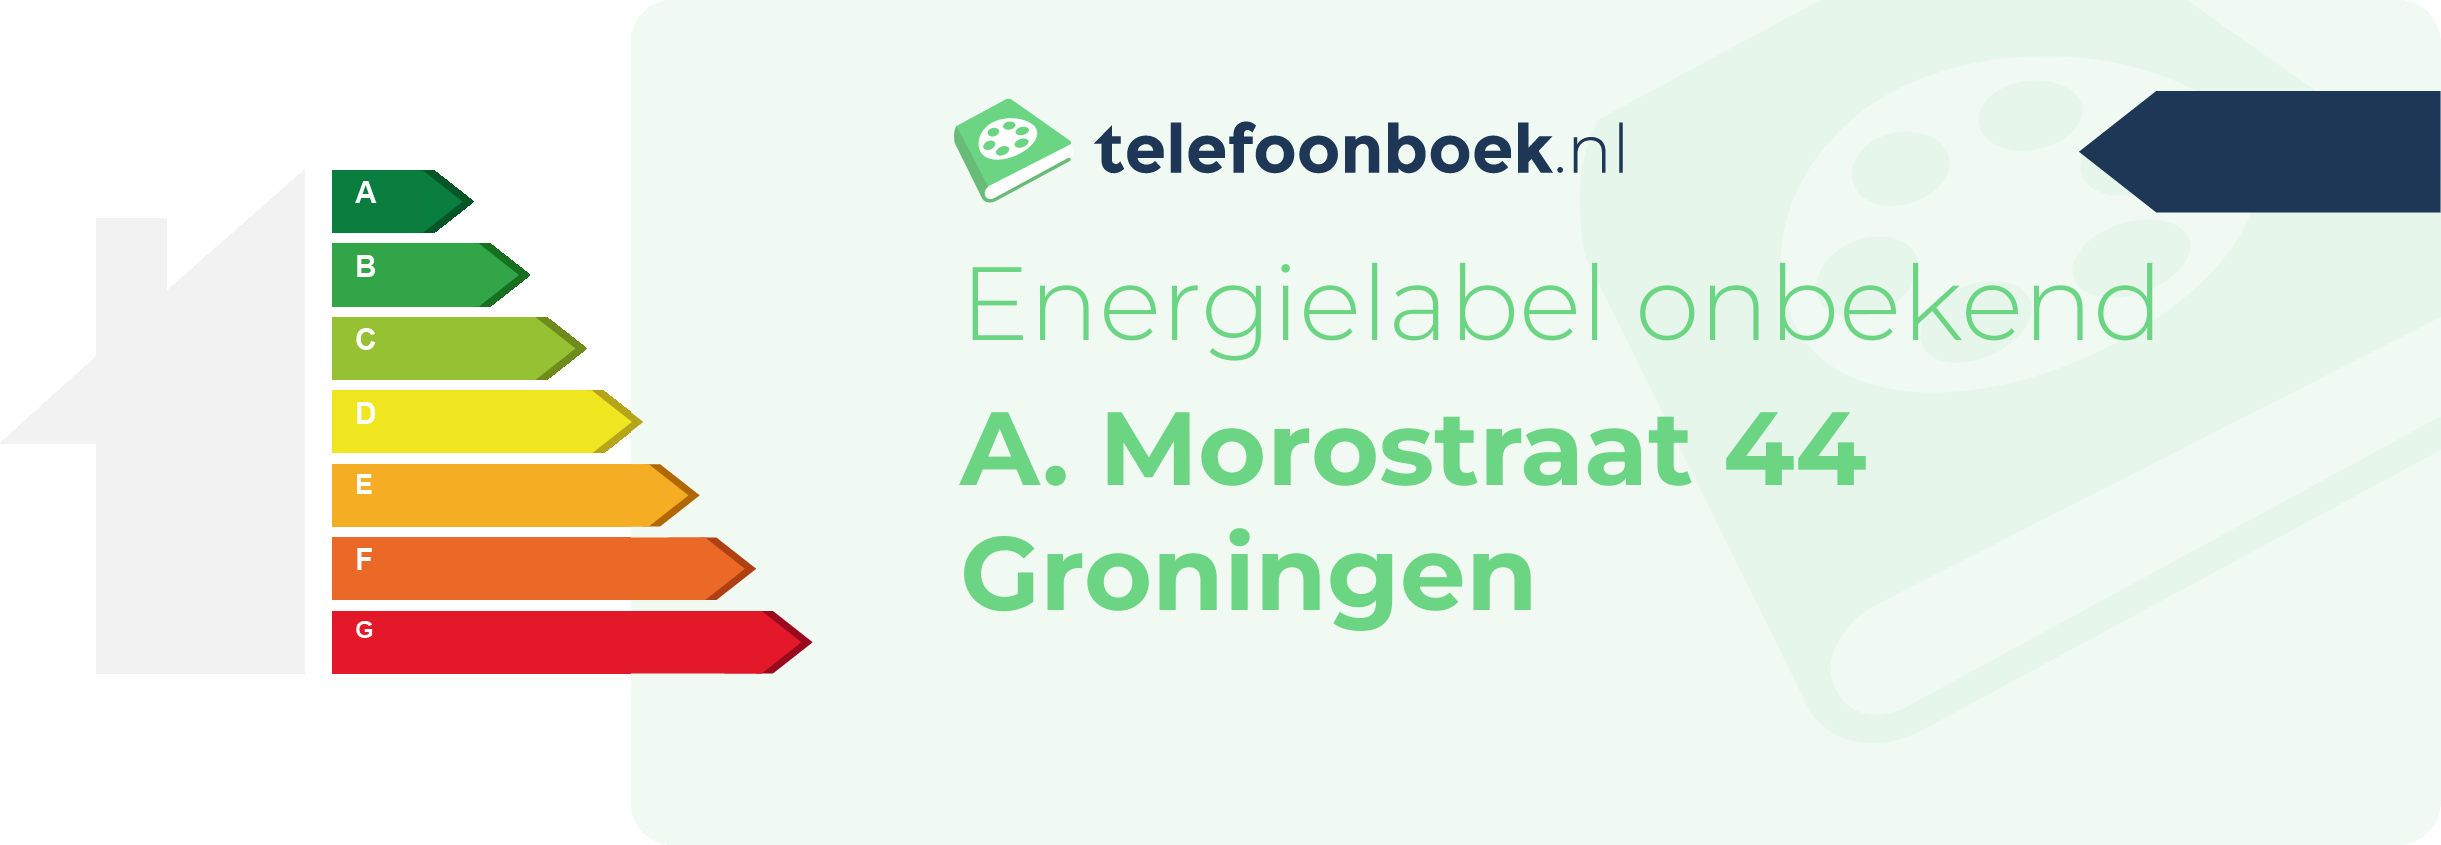 Energielabel A. Morostraat 44 Groningen